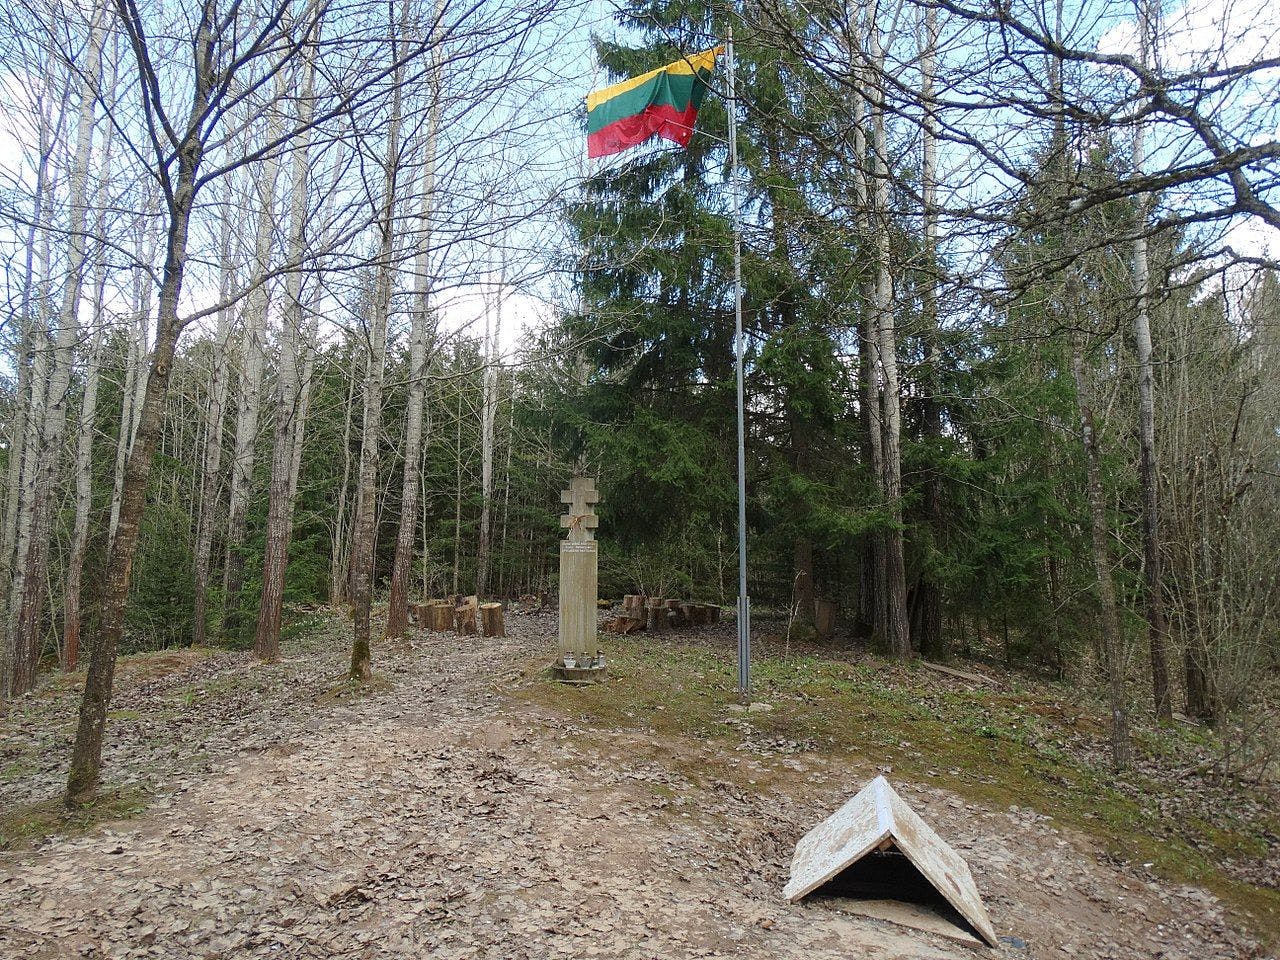 Daugėliškių miško bunkerio pažintinis takas #2